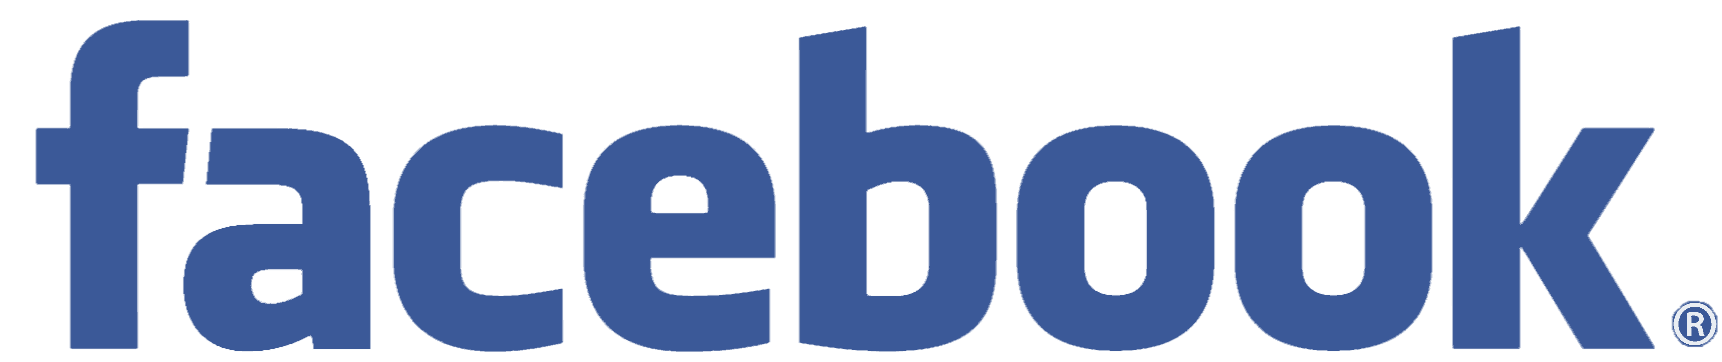 facebook-logo-full